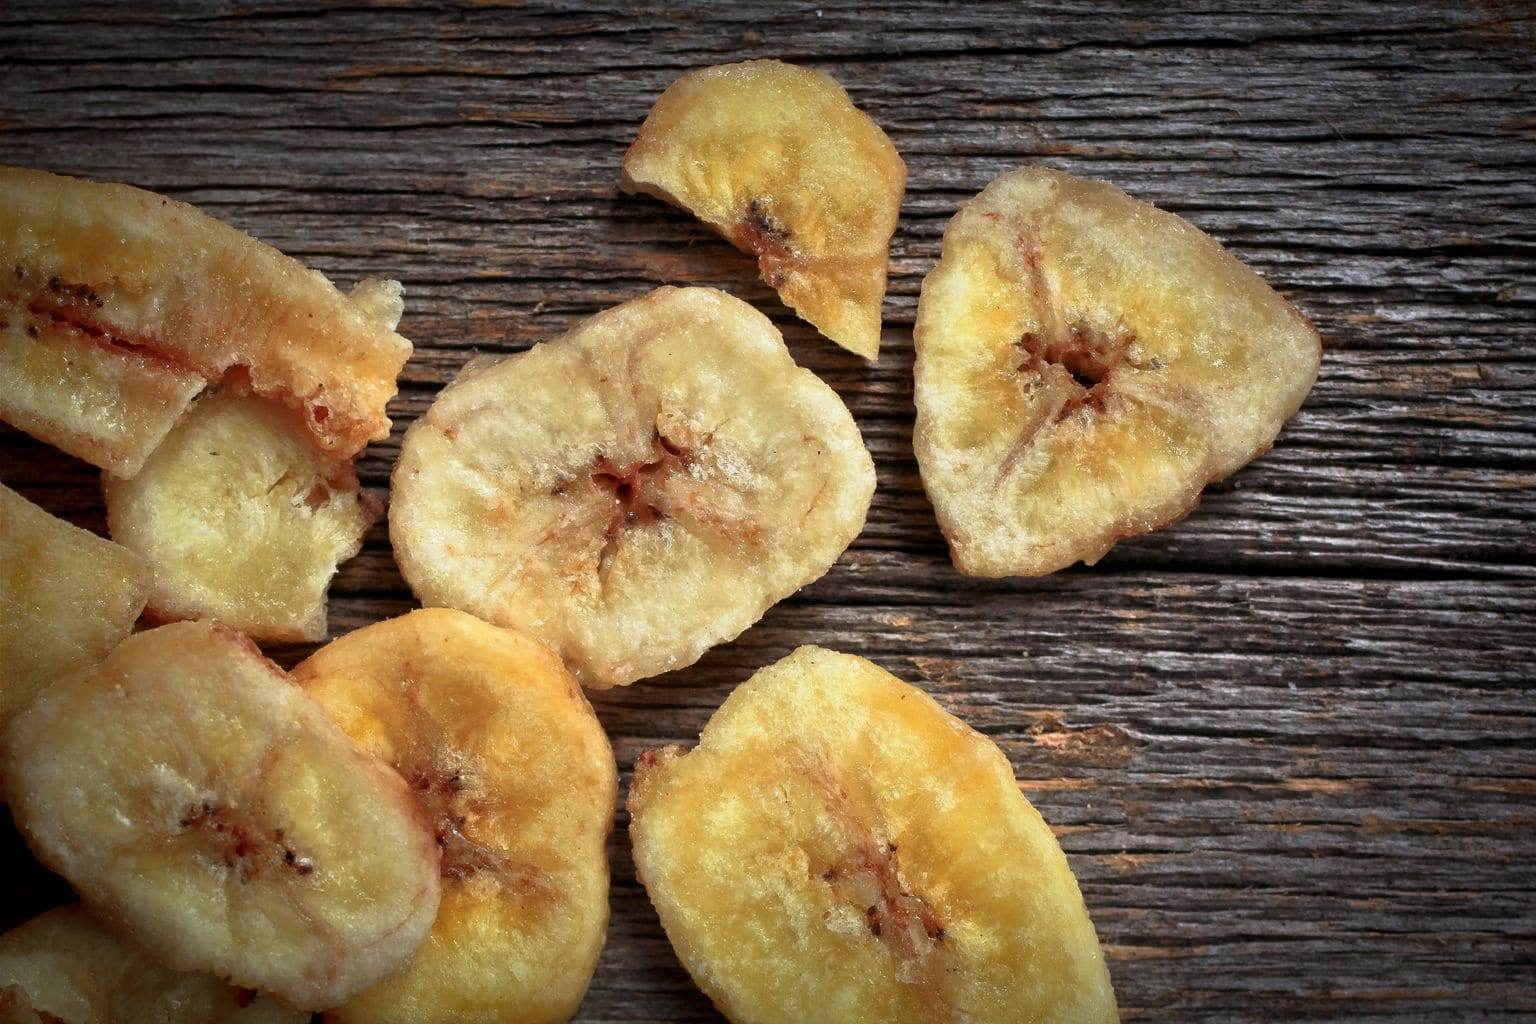 suszone banany czy suszone banany są zdrowe?